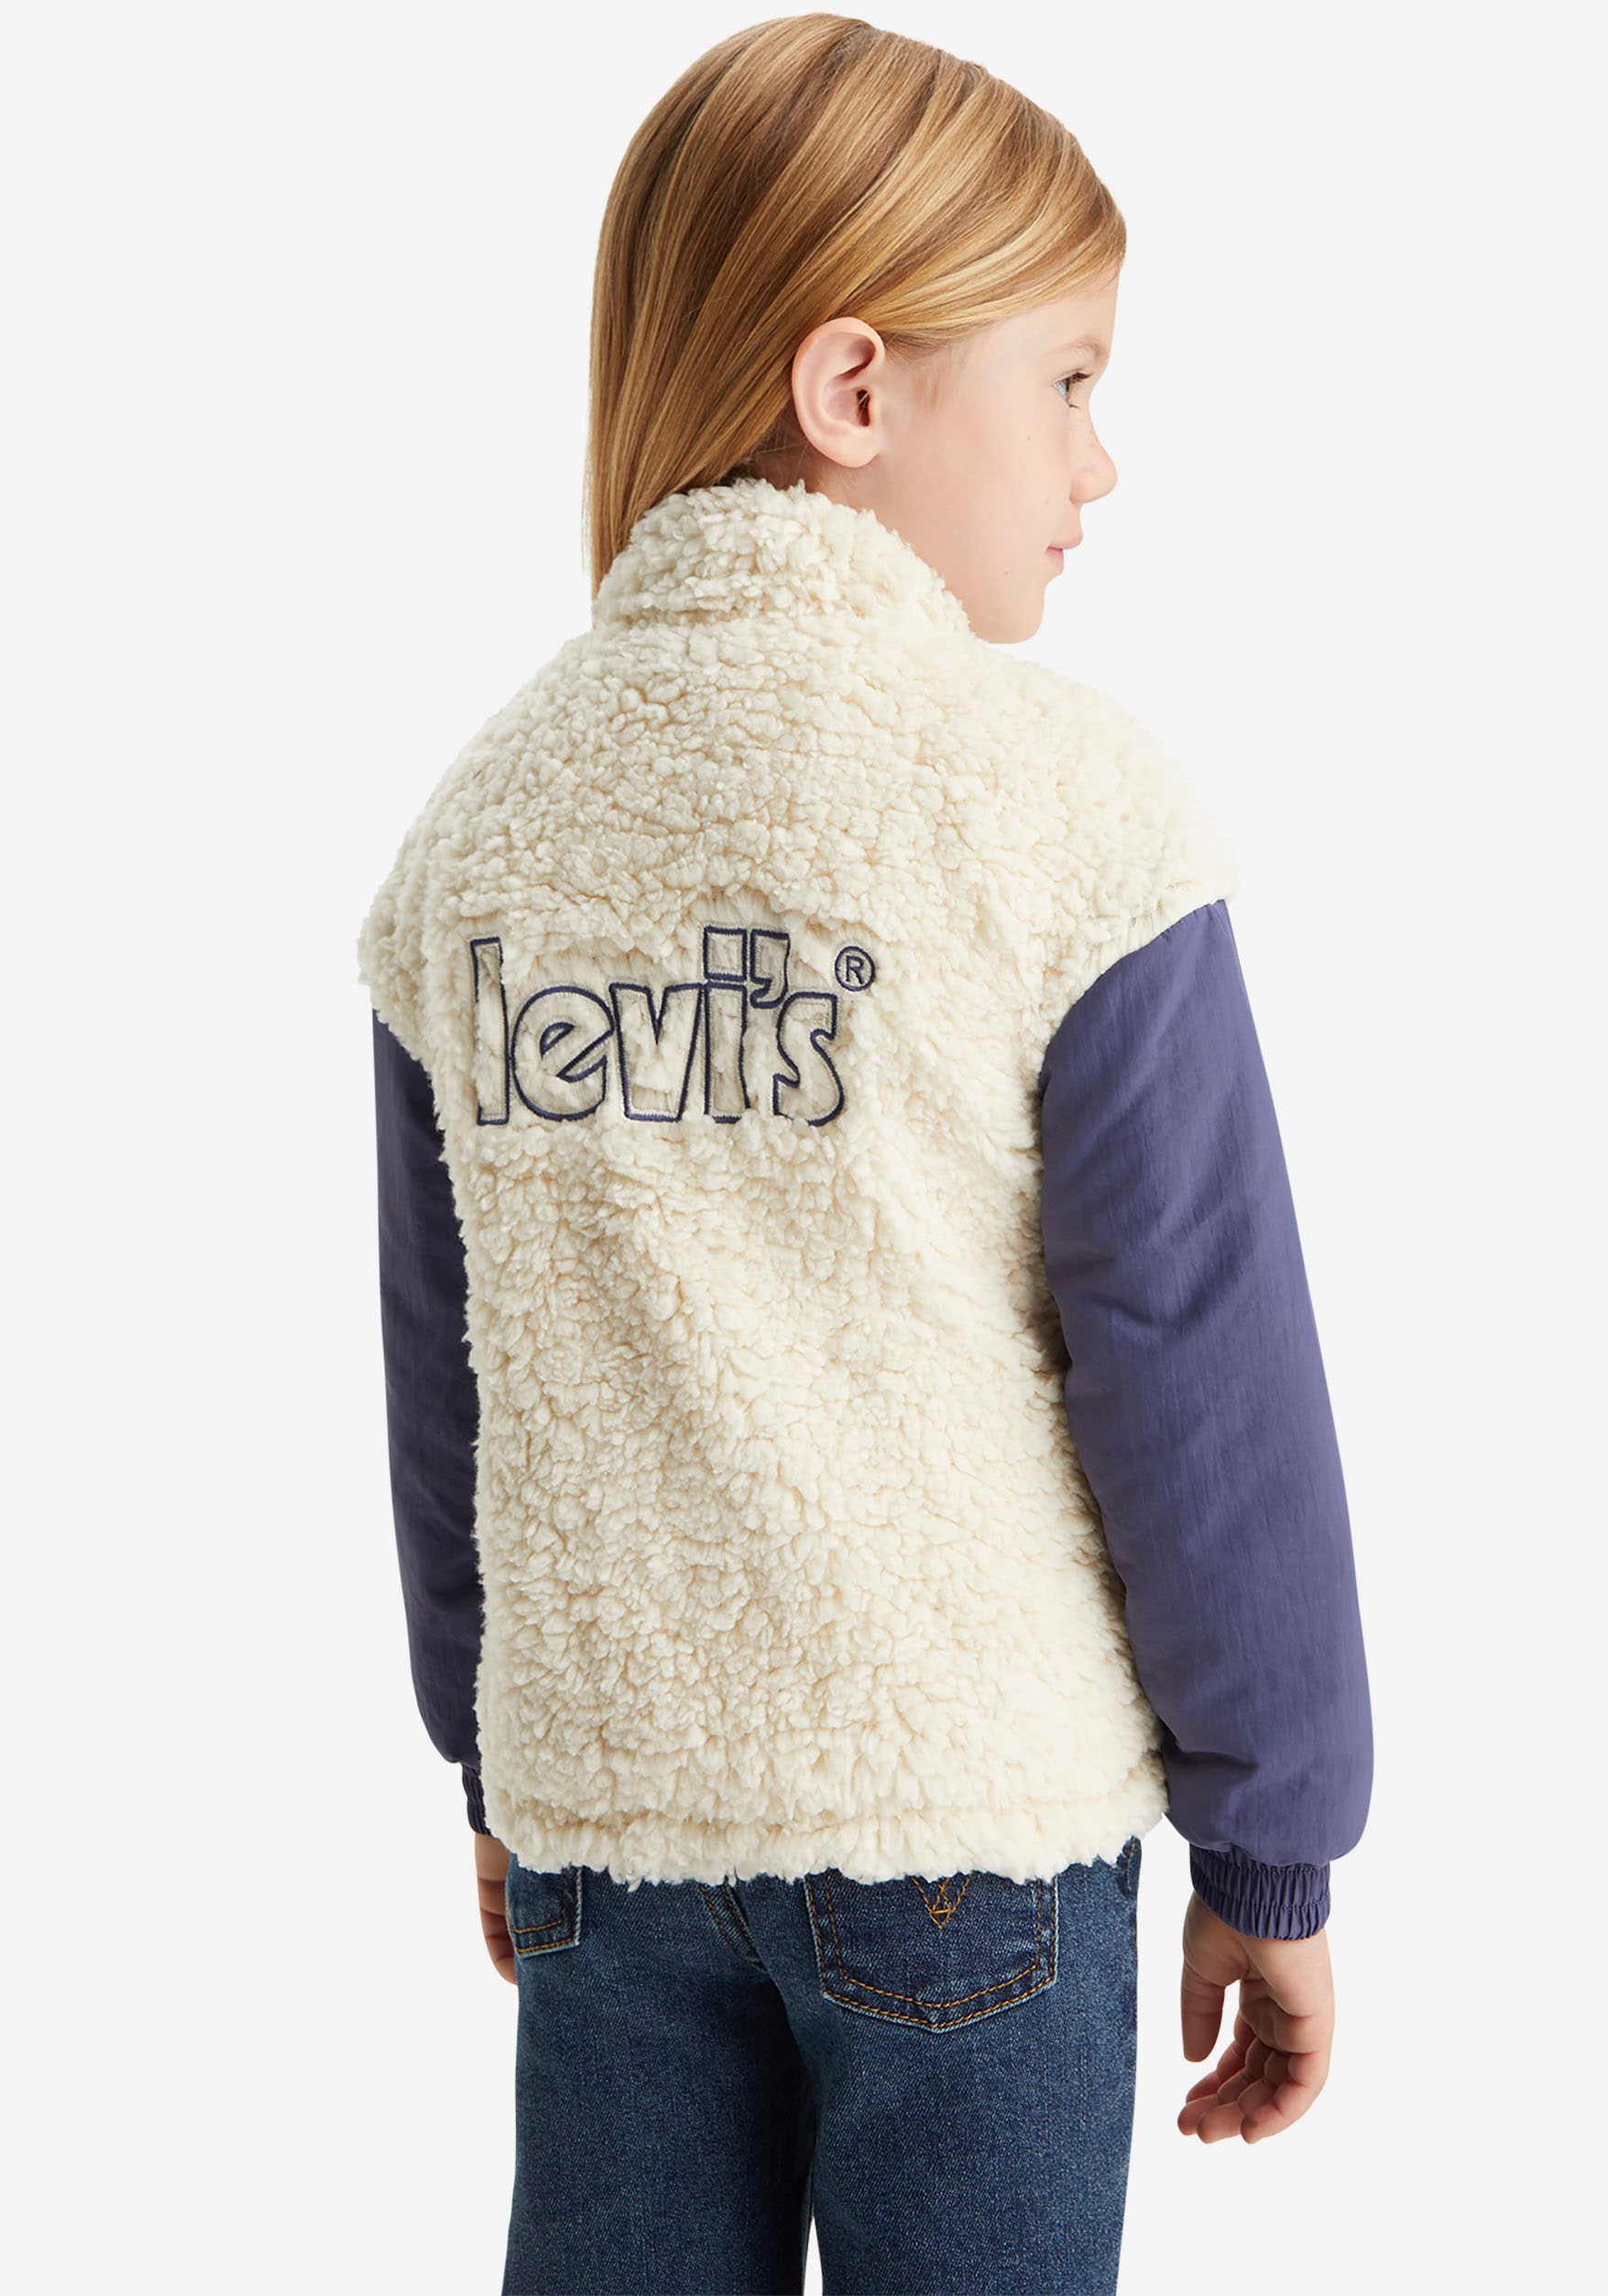 Levi's® Kids Fellimitatjacke, mit Markenschriftzug auf dem Rücken for GIRLS